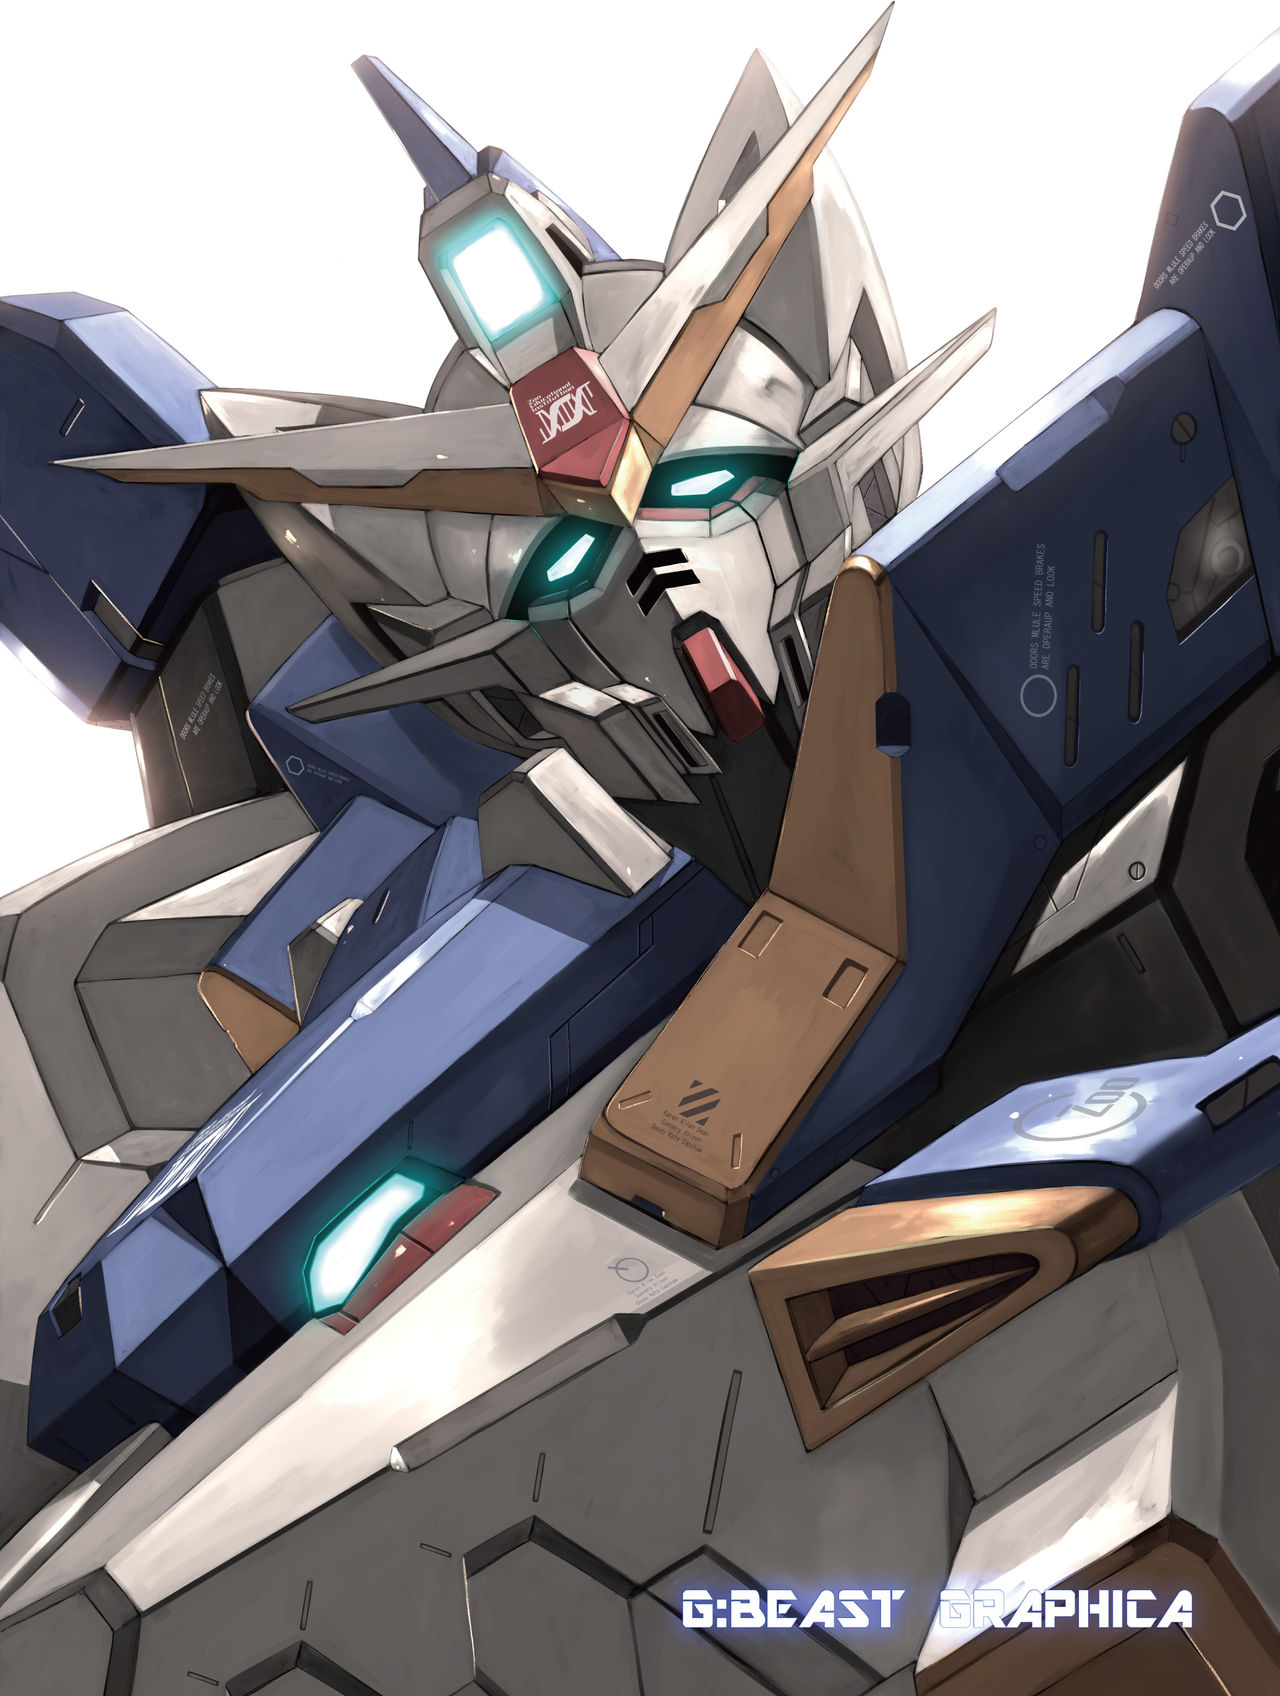 1038843 main Gundam Beast Graphica 000 Cover